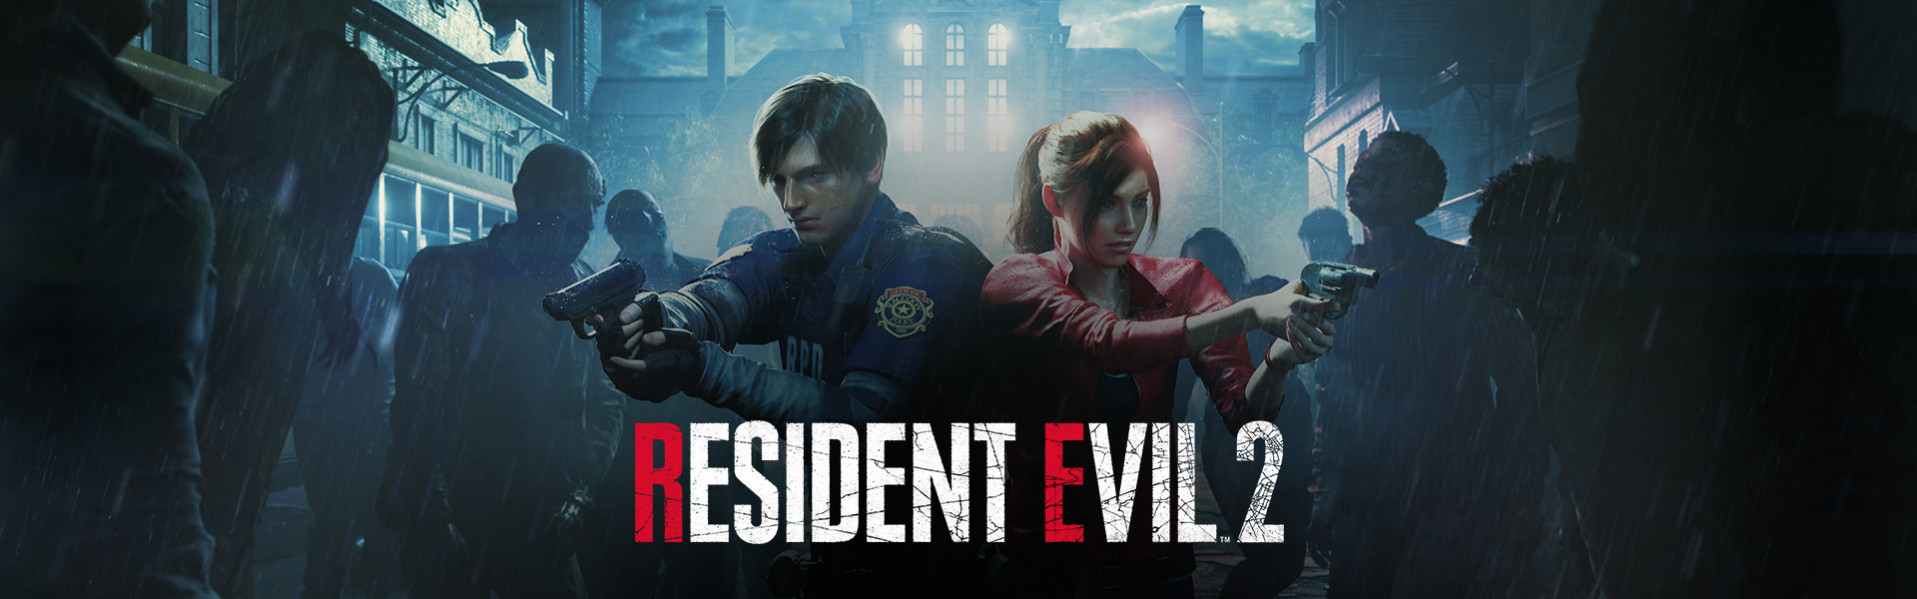 Resident Evil 2 remastered